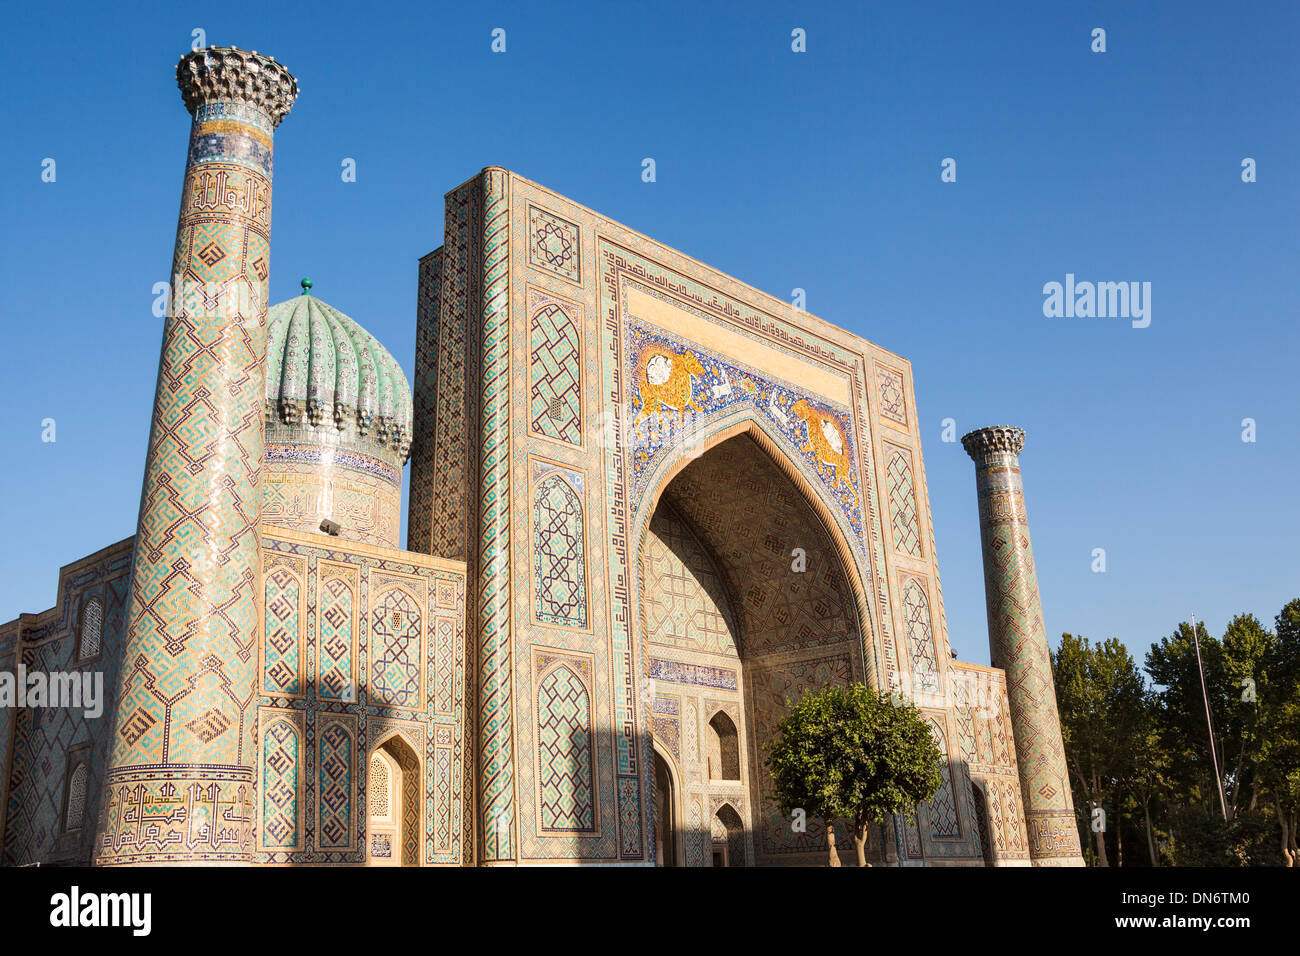 Sher Dor Madrasah, also known as Shir Dor Madrasah, Registan Square, Samarkand, Uzbekistan Stock Photo